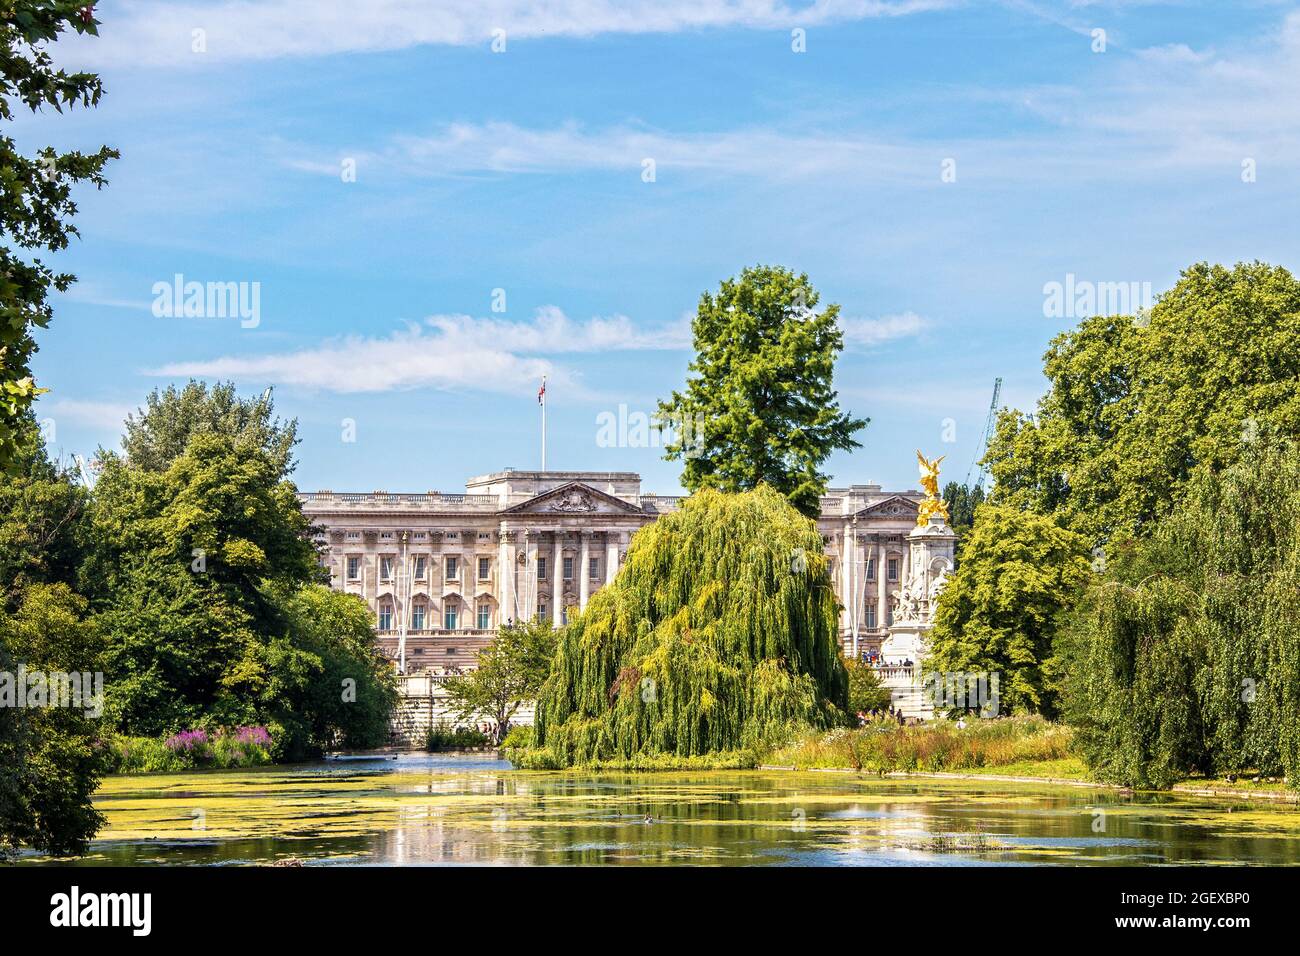 07 24 2019 Londres Royaume-Uni vue sur Buckingham Palace vue sur le lac dans le parc St James avec des saules et des canards pleureurs pendant les beaux jours d'été Banque D'Images